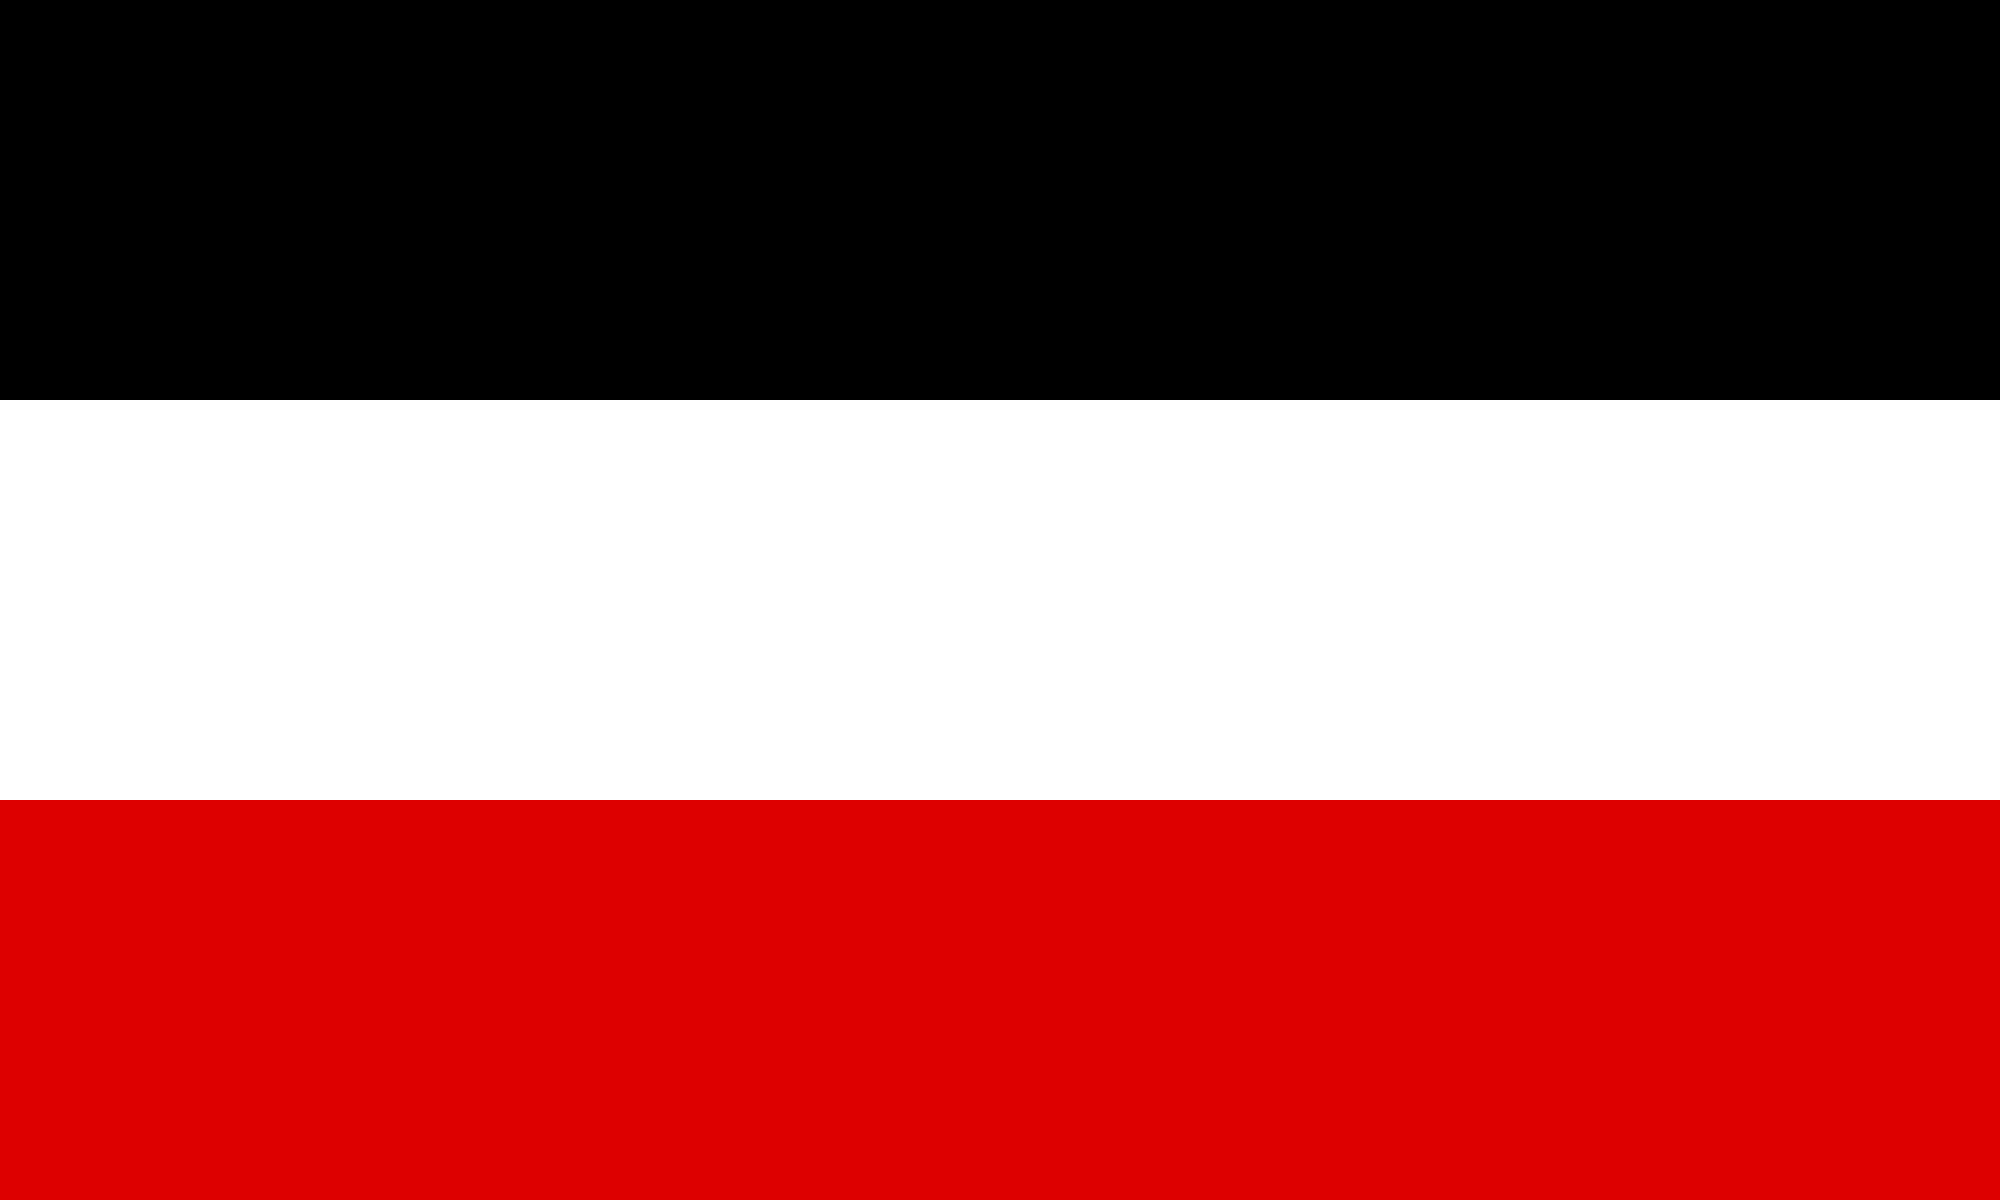 第二帝国国旗(schwarz-weiss-rot)